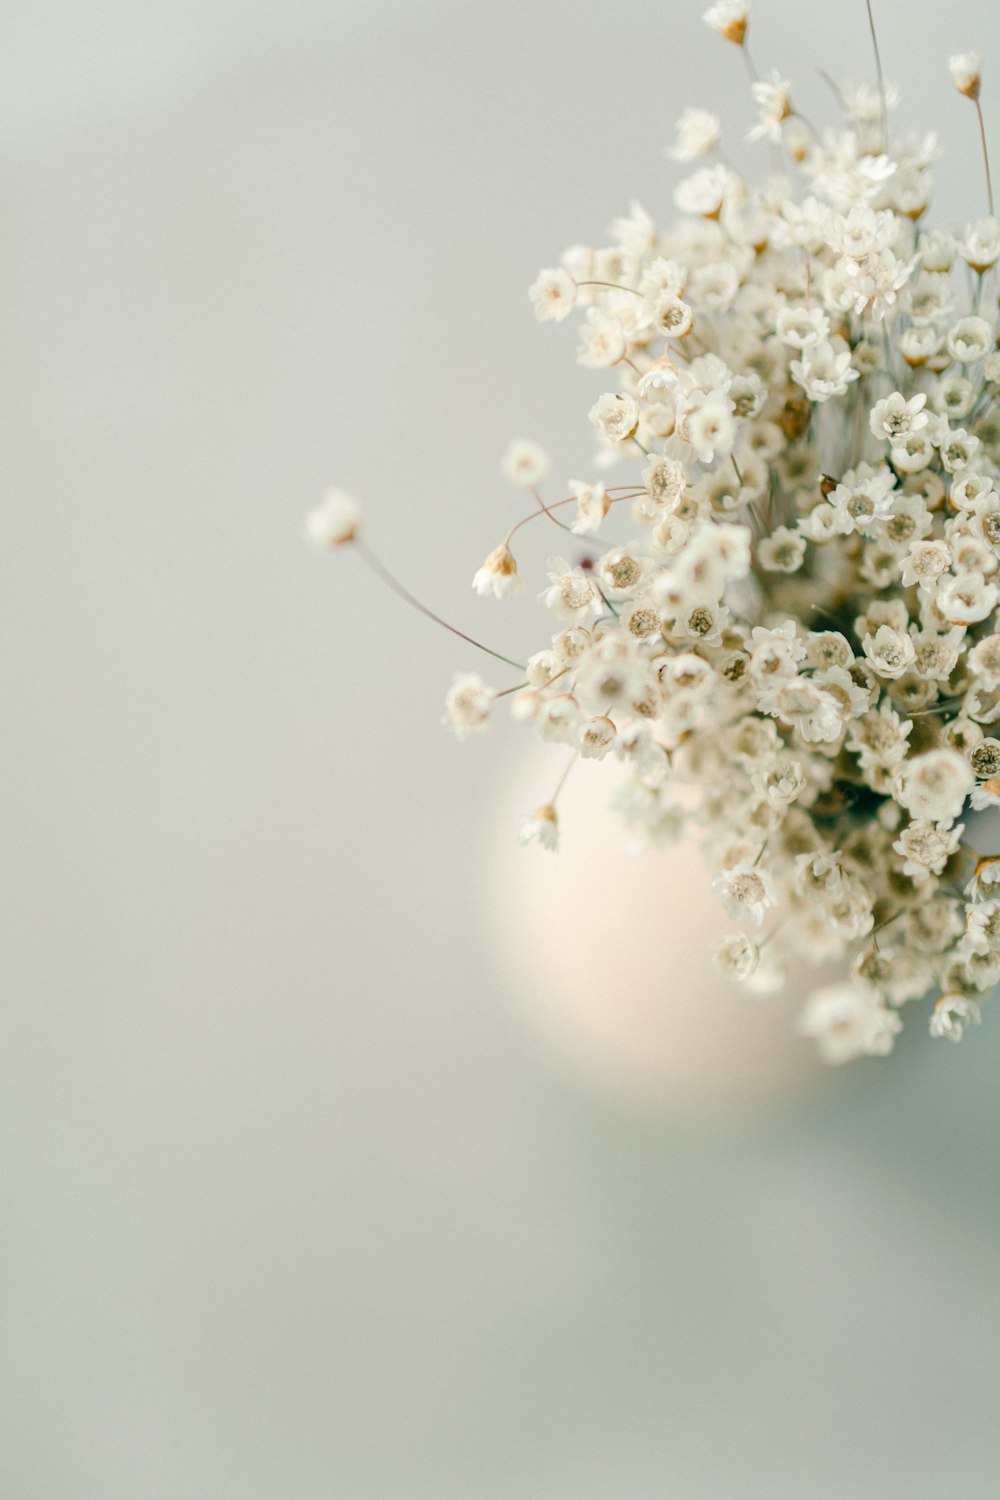 テーブルの上に白い花が入った白い花瓶